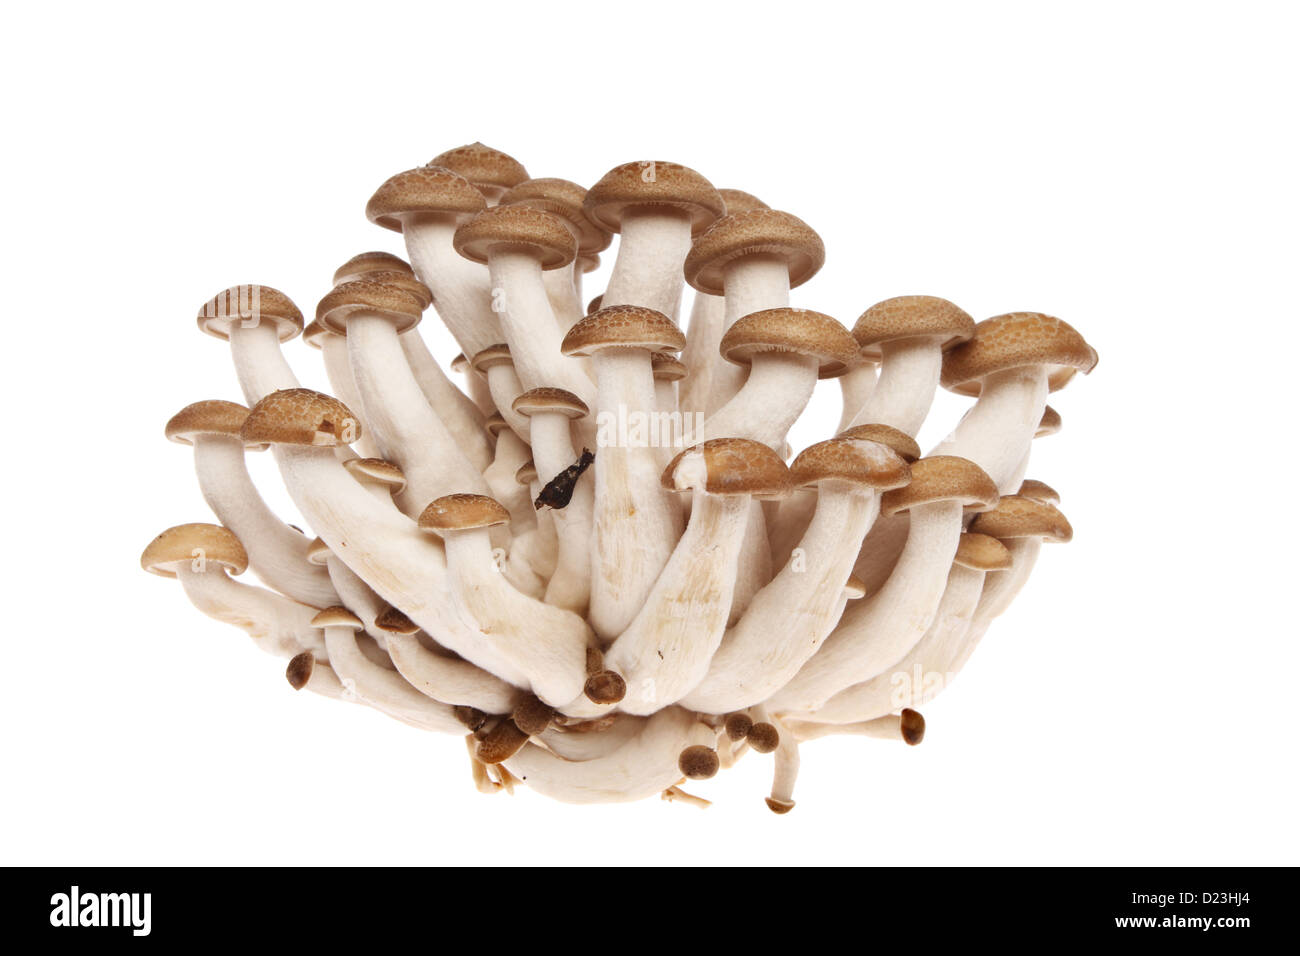 Député comestibles champignons shimeji exotiques isolés contre white Banque D'Images